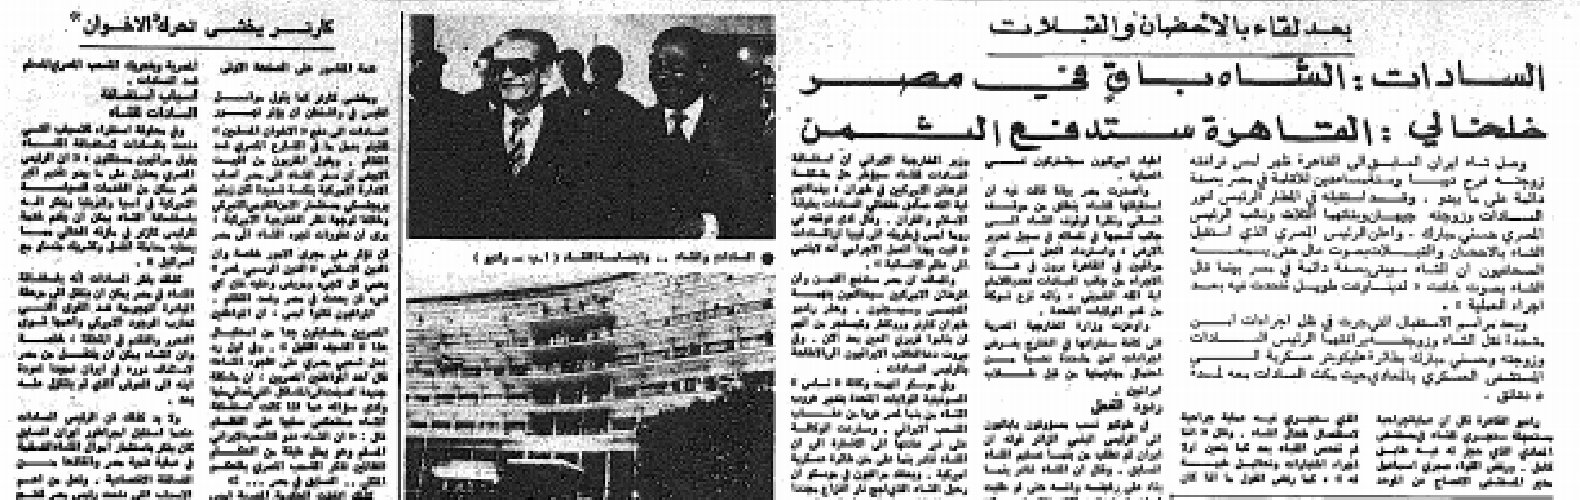 في مارس/ آذار 1980، وصل شاه إيران السابق إلى القاهرة برفقة زوجته و6 مساعدين للإقامة الدائمة في مصر حيث استقبلهم الرئيس الراحل محمد أنور السادات وزوجته (أرشيف وكالات)